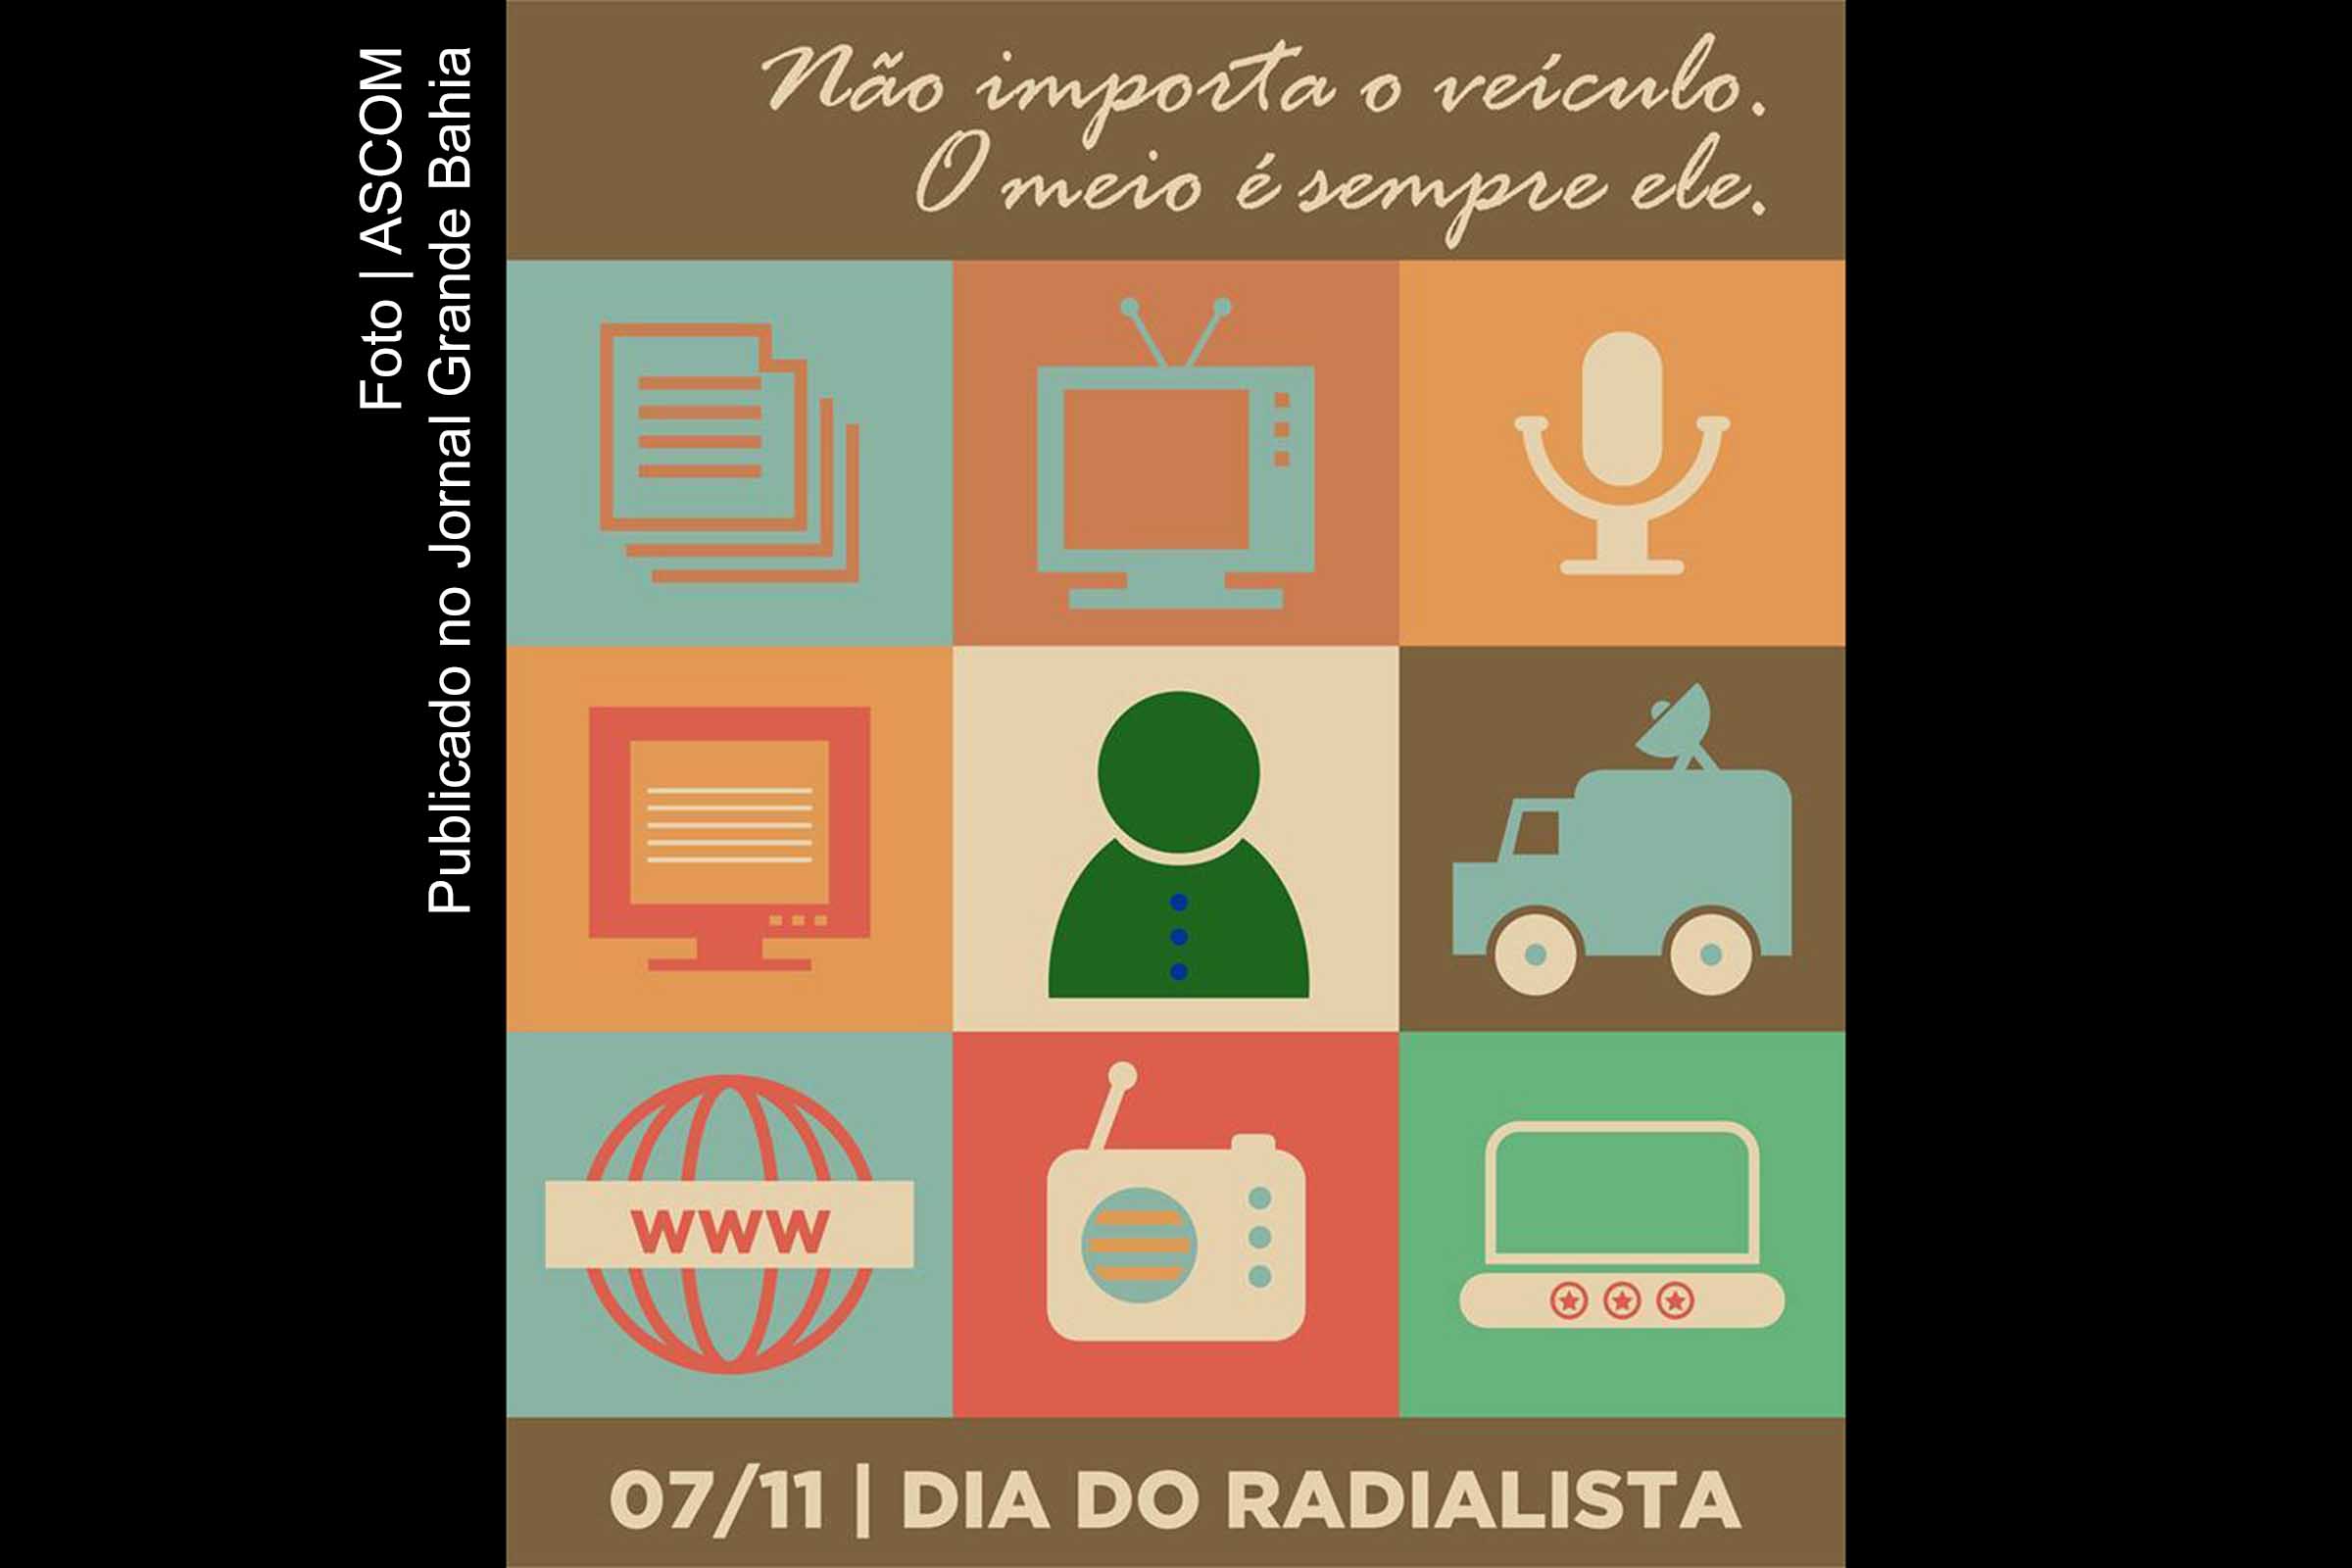 Dia do Radialista é comemorando em 7 de novembro.